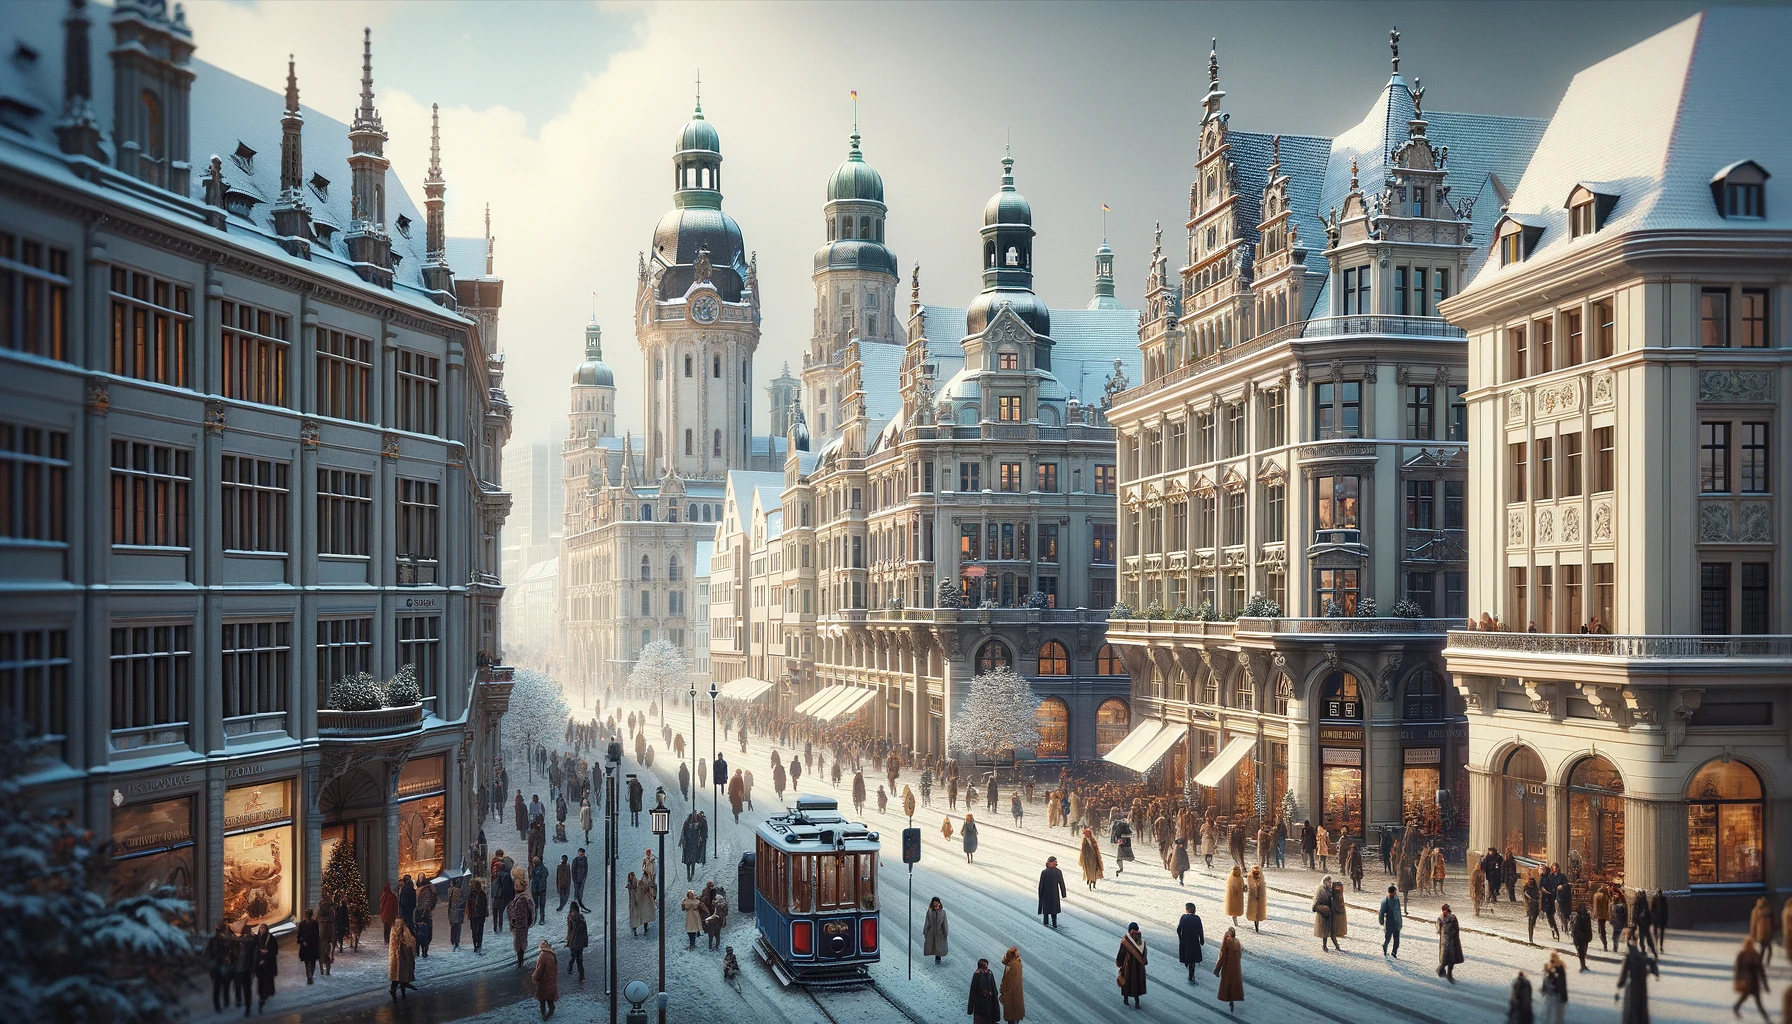 Zimowy krajobraz Lipska z zabytkową architekturą i pokrytymi śniegiem ulicami